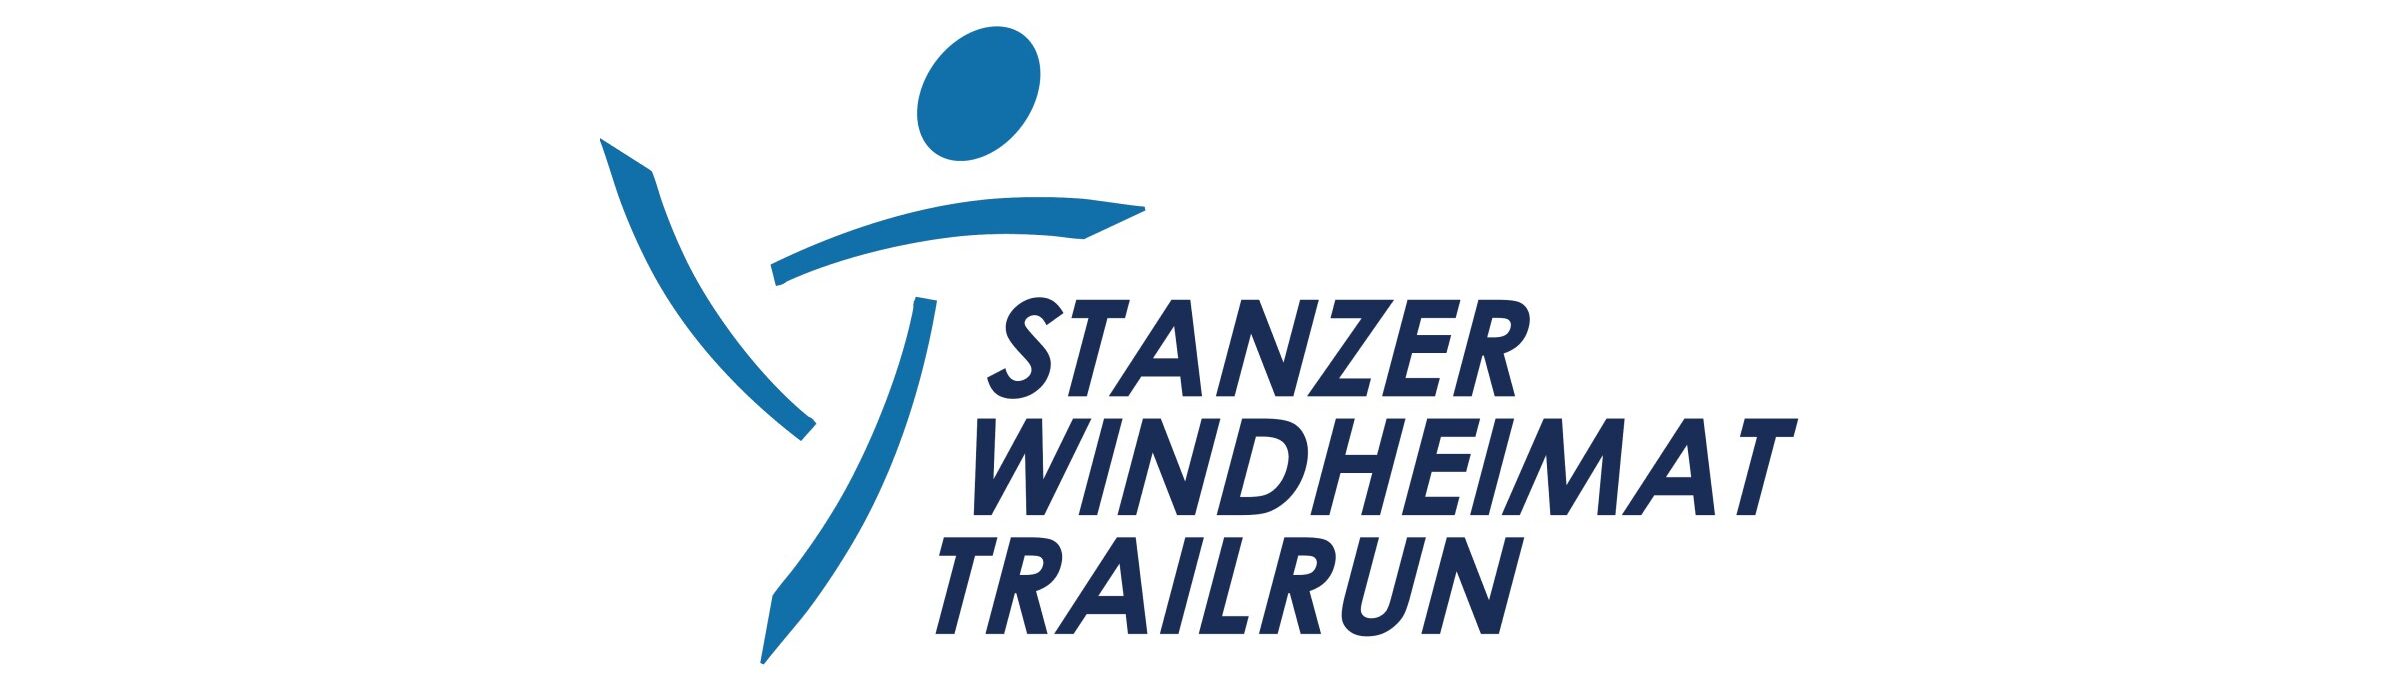 14. Stanzer Windheimat Trailrun